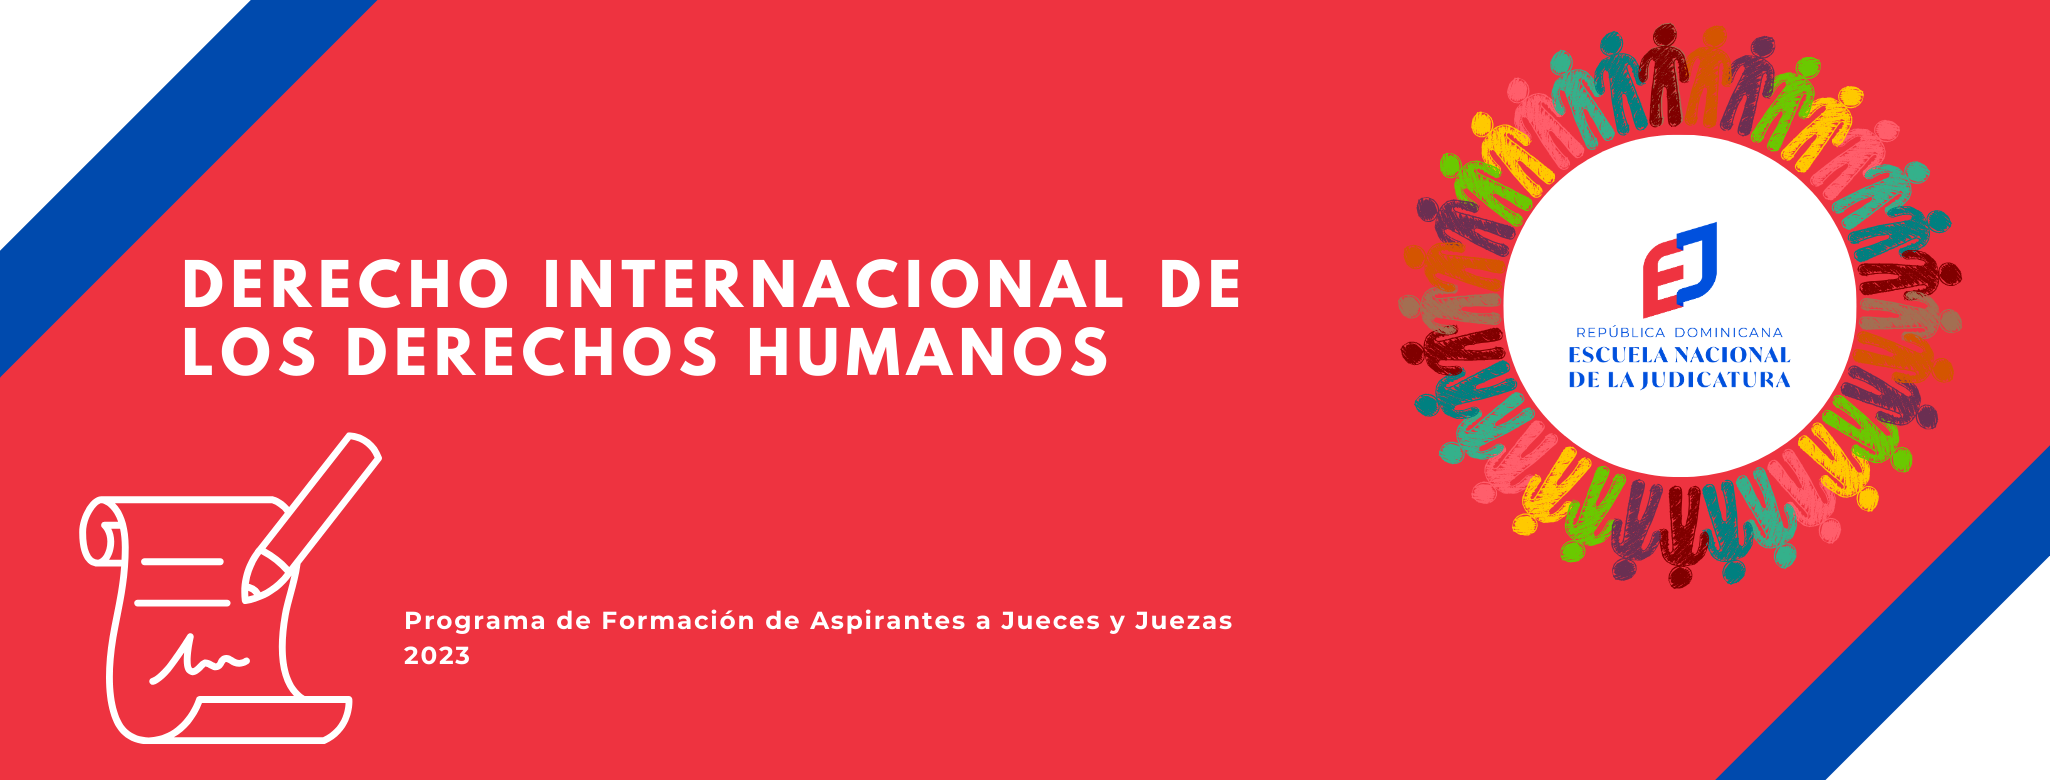 MDJ-202-24-01 Derecho Internacional de los Derechos Humanos